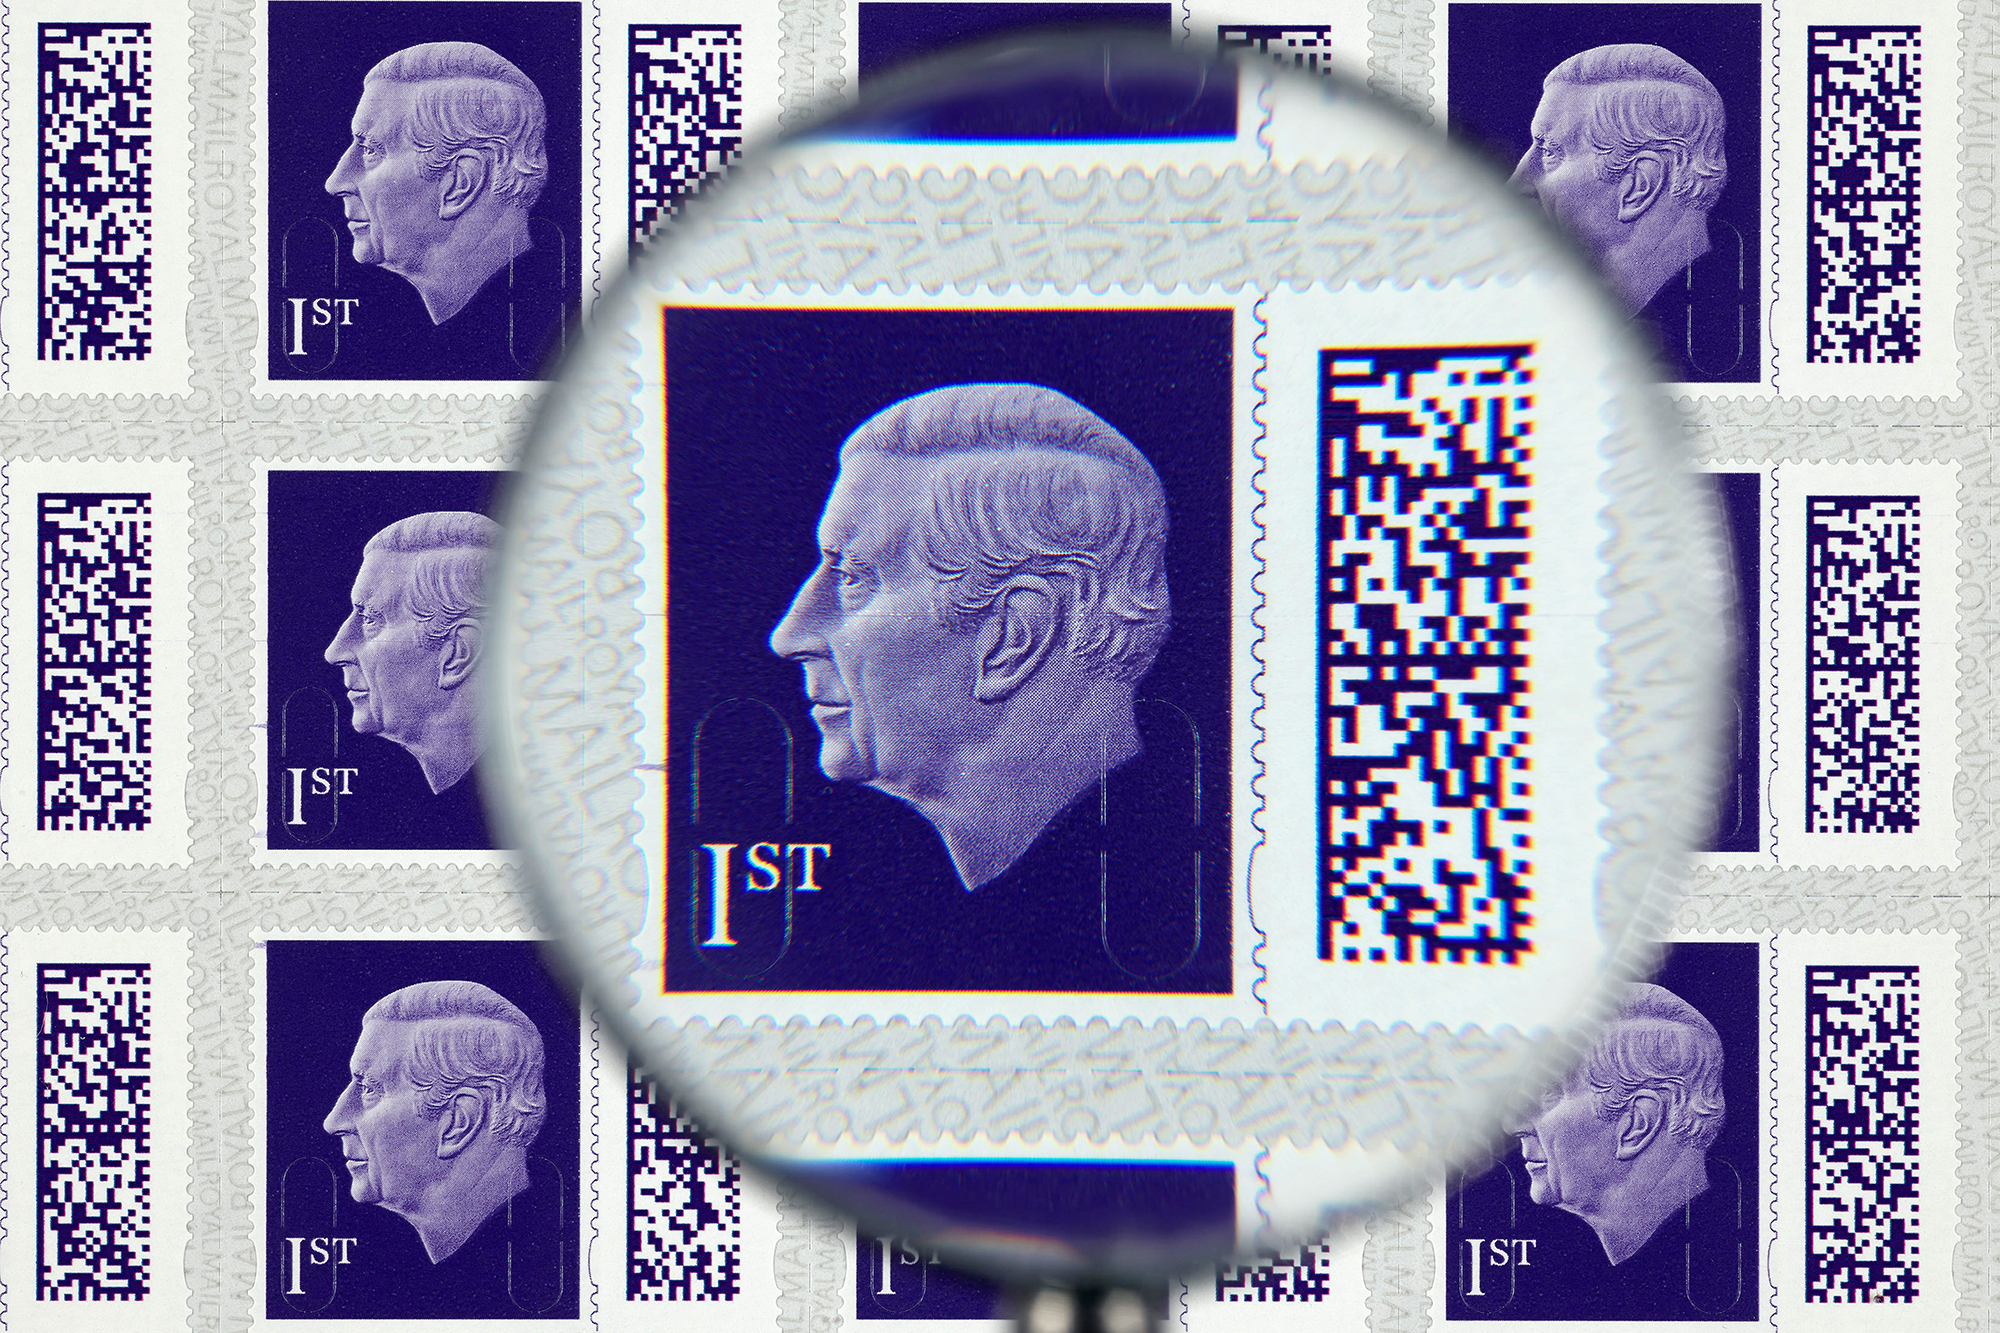 Die neue von der Royal Mail veröffentlichte Briefmarke zeigt König Charles III. (Bild: Royal Mail Group/AFP)